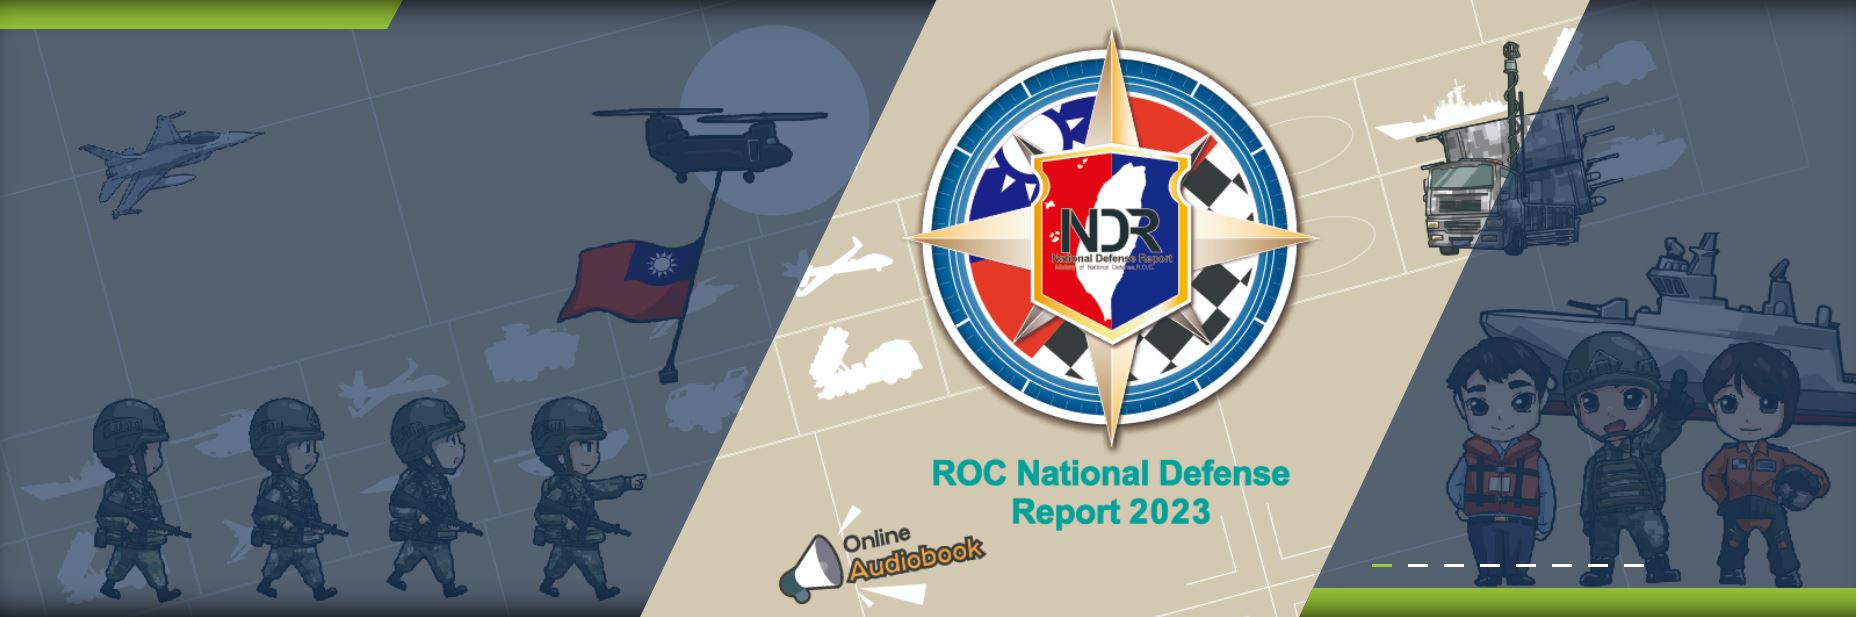 ROC NATIONAL DEFENSE REPORT 2023